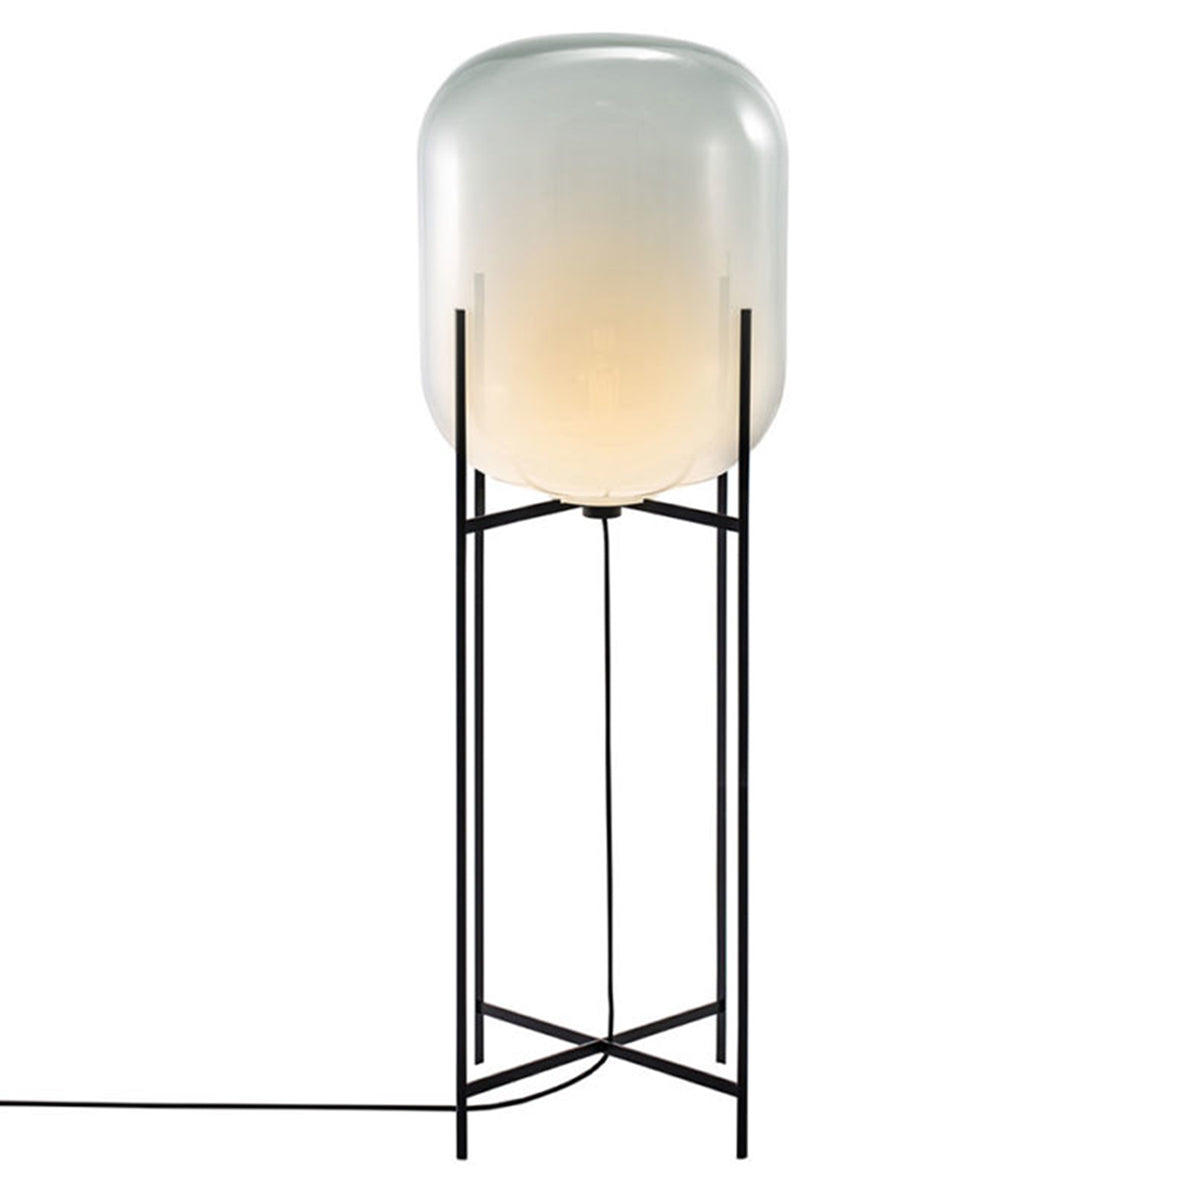 Oda Floor Lamp: Big - 55.1